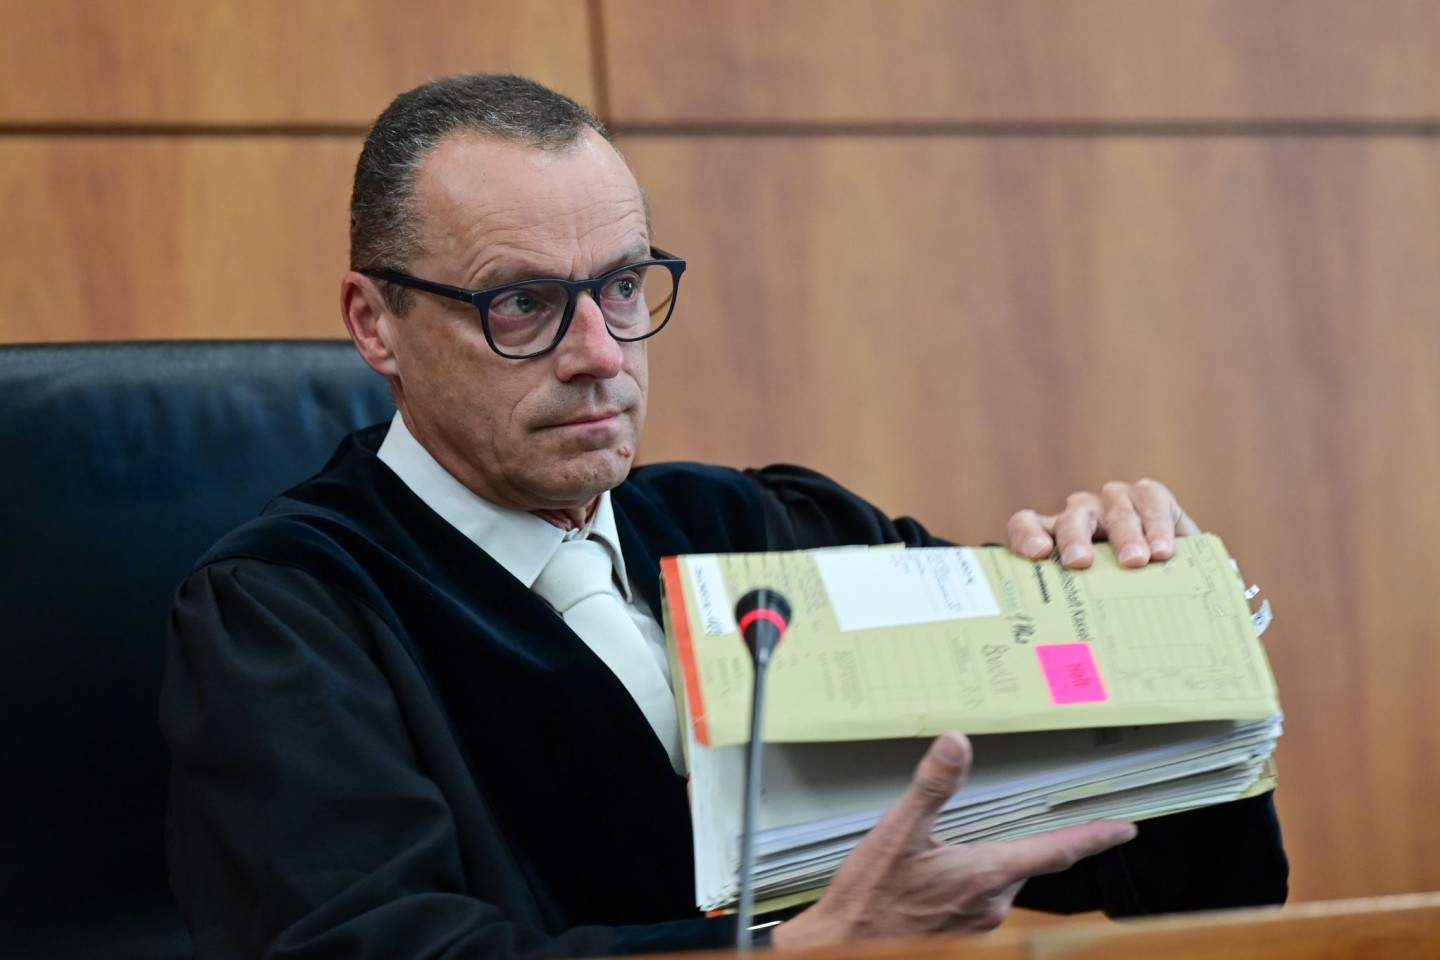 Der Vorsitzende Richter beim Prozessauftakt im Landgericht Kassel.